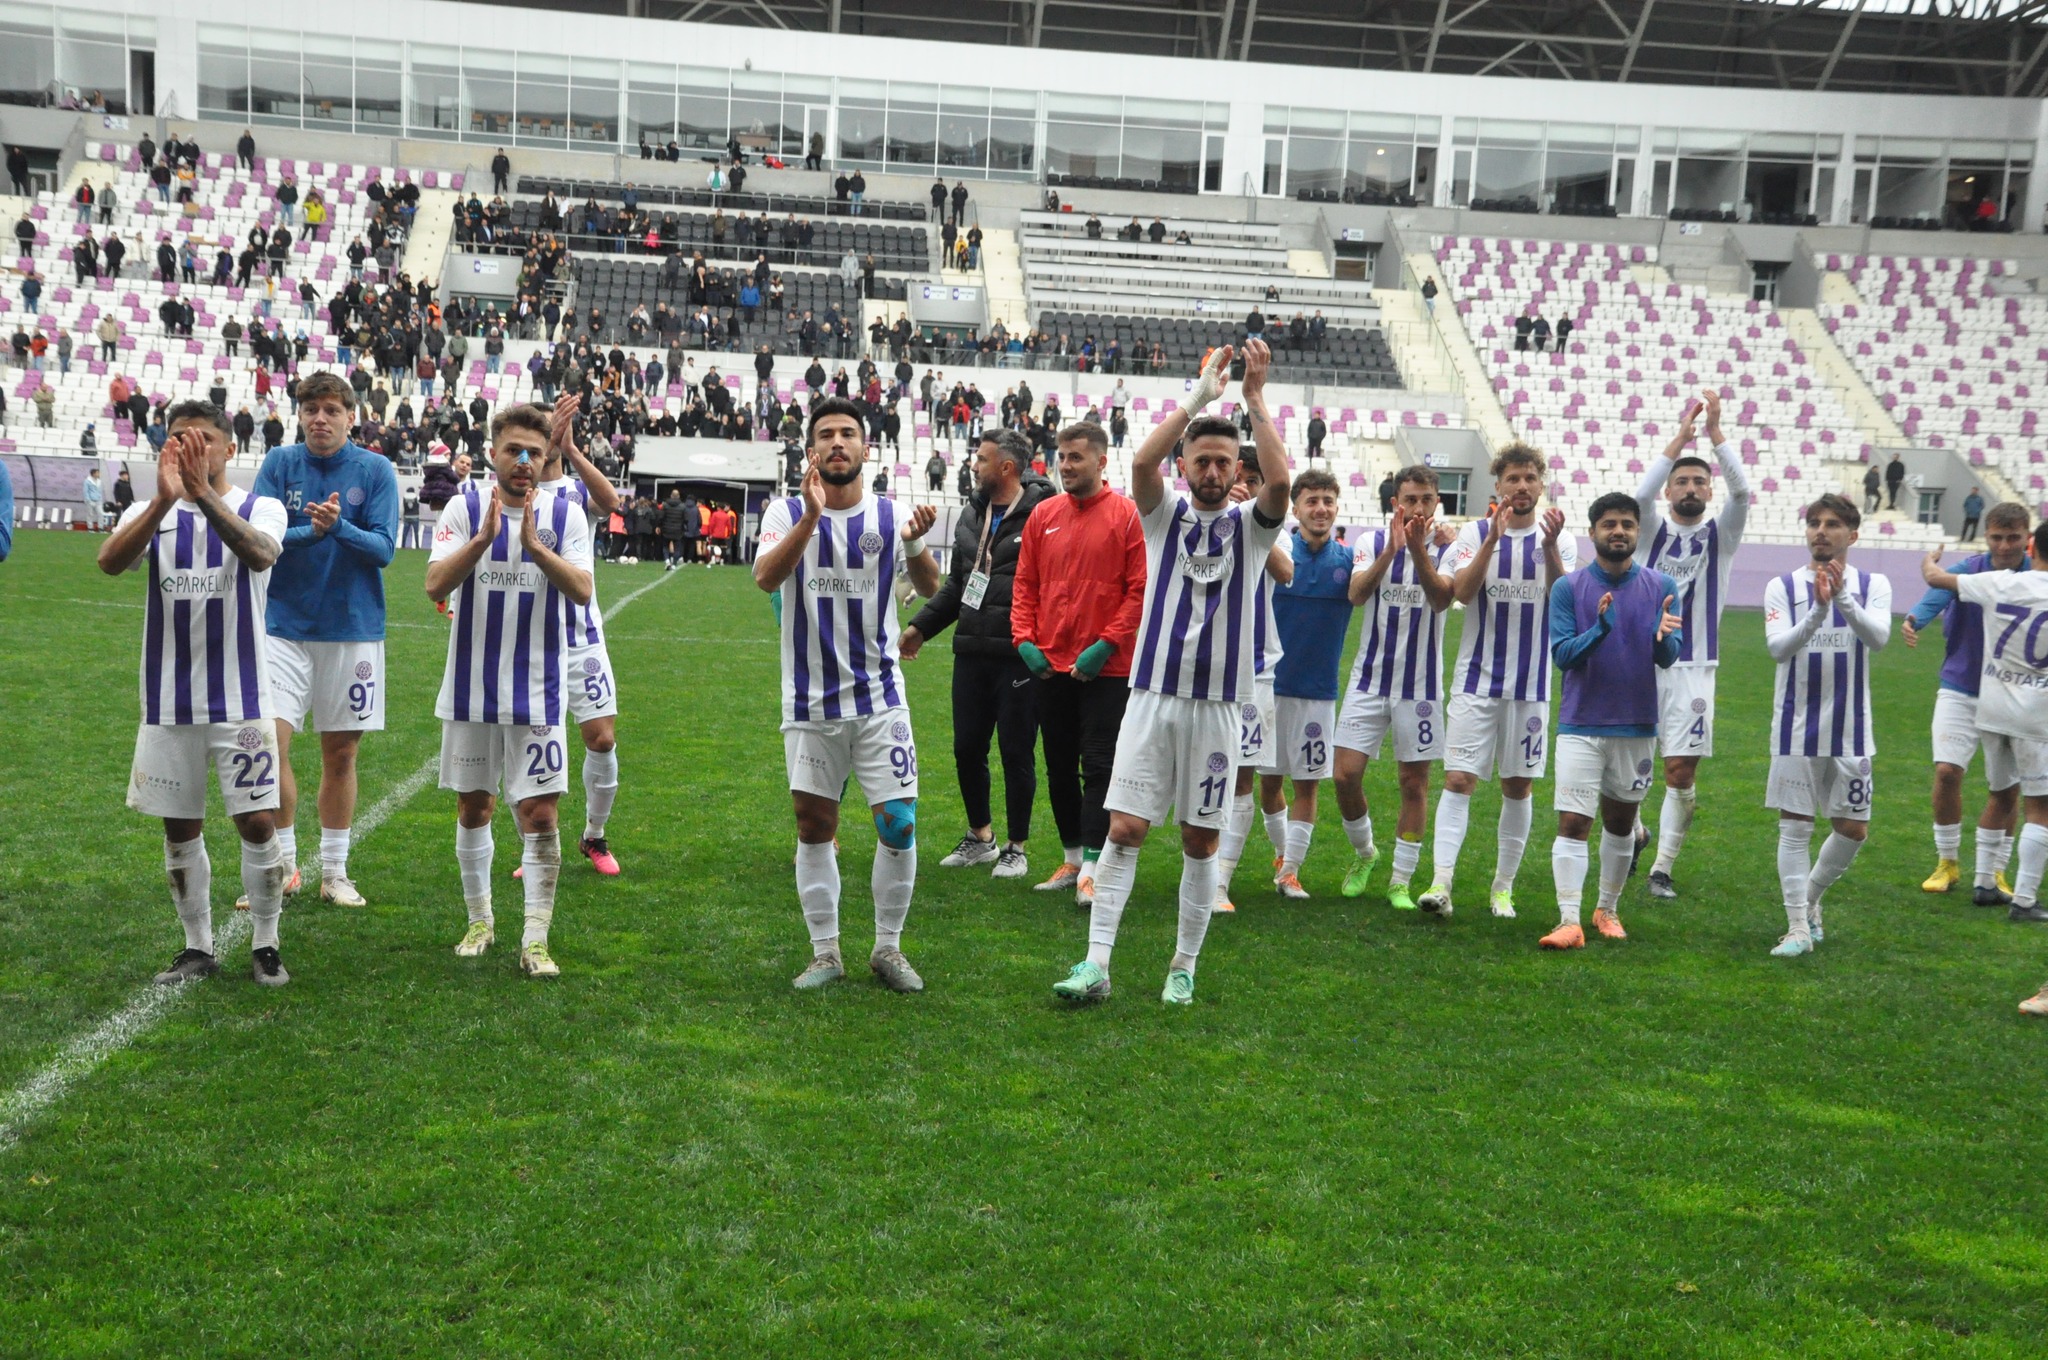  52 Orduspor Futbol Kulübü İç Sahada Son 5 Maçını 3 Farklı Teknik Direktörle Kazandı